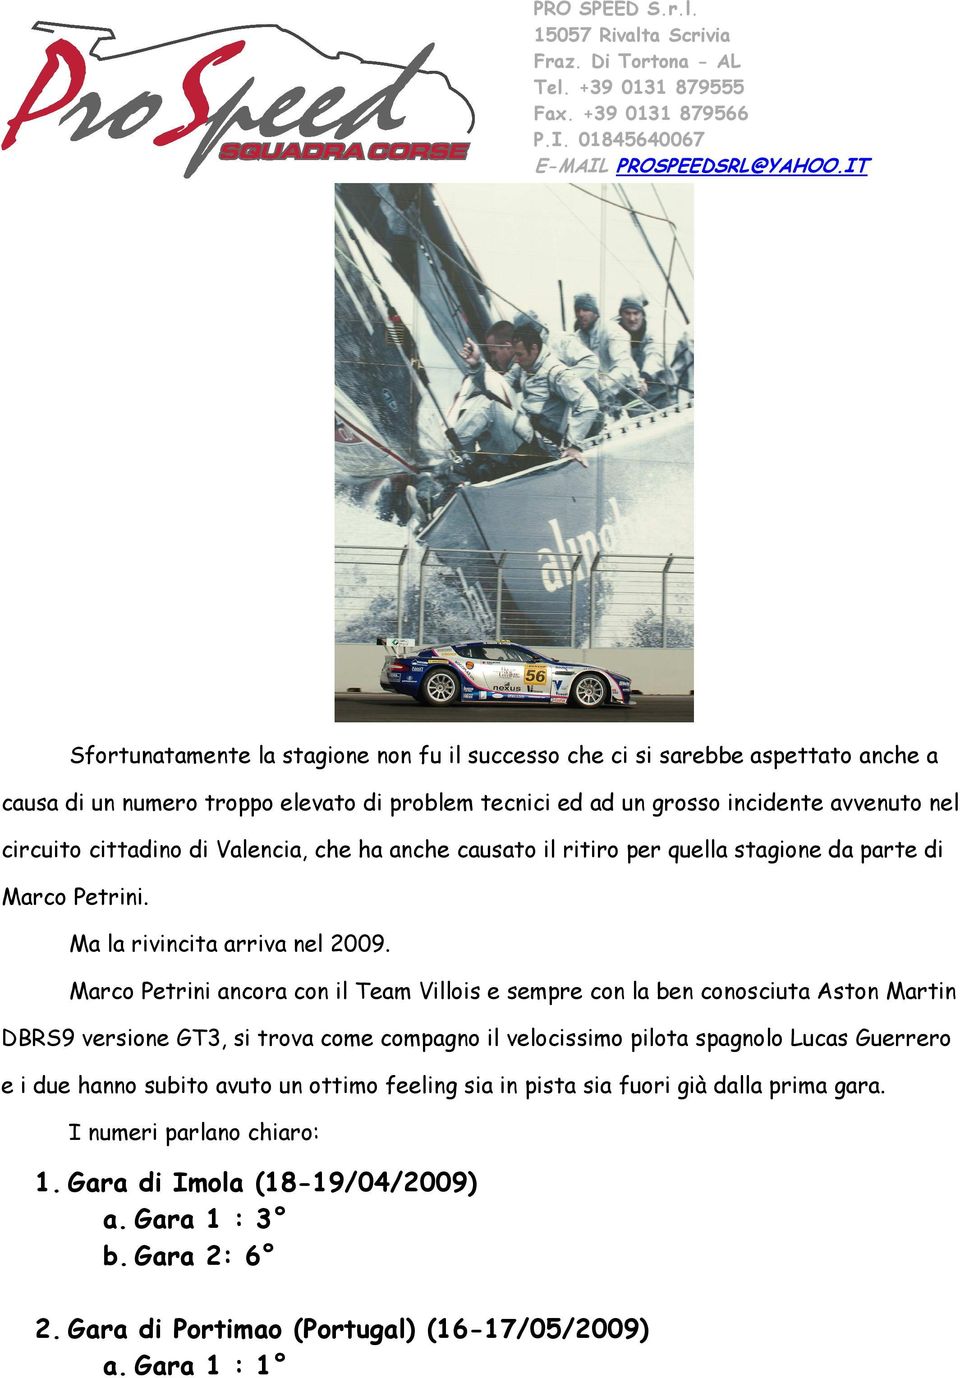 Marco Petrini ancora con il Team Villois e sempre con la ben conosciuta Aston Martin DBRS9 versione GT3, si trova come compagno il velocissimo pilota spagnolo Lucas Guerrero e i due